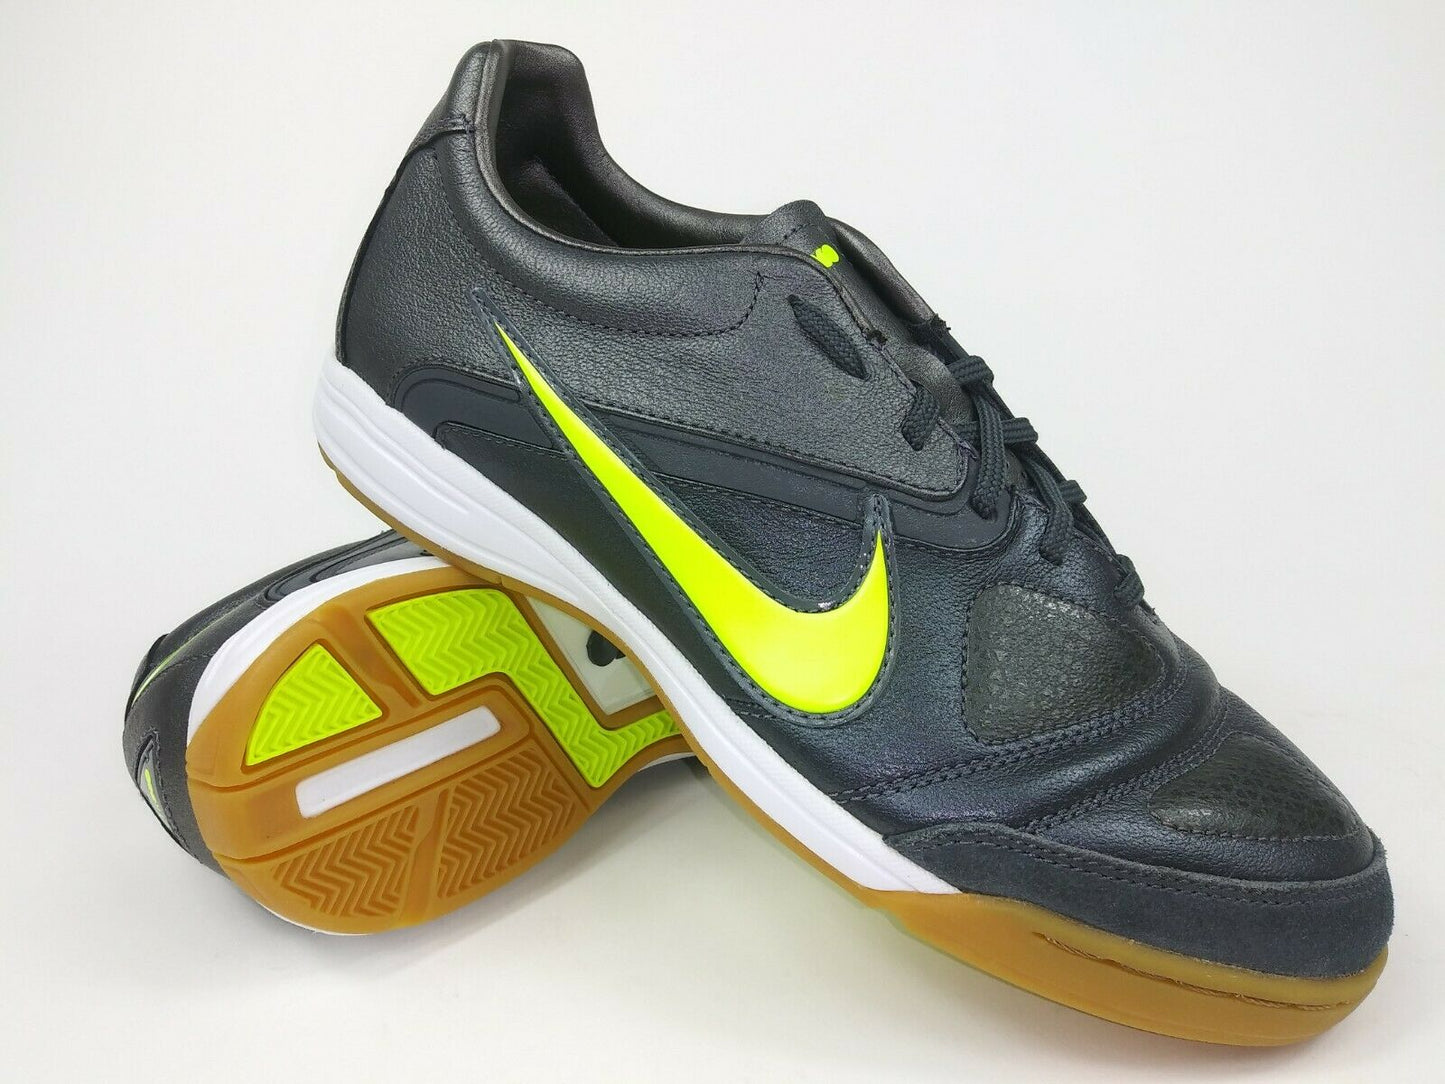 Avenida Disfrazado tarifa Nike CTR 360 Libretto ll IC Indoor Shoes Grey – Villegas Footwear